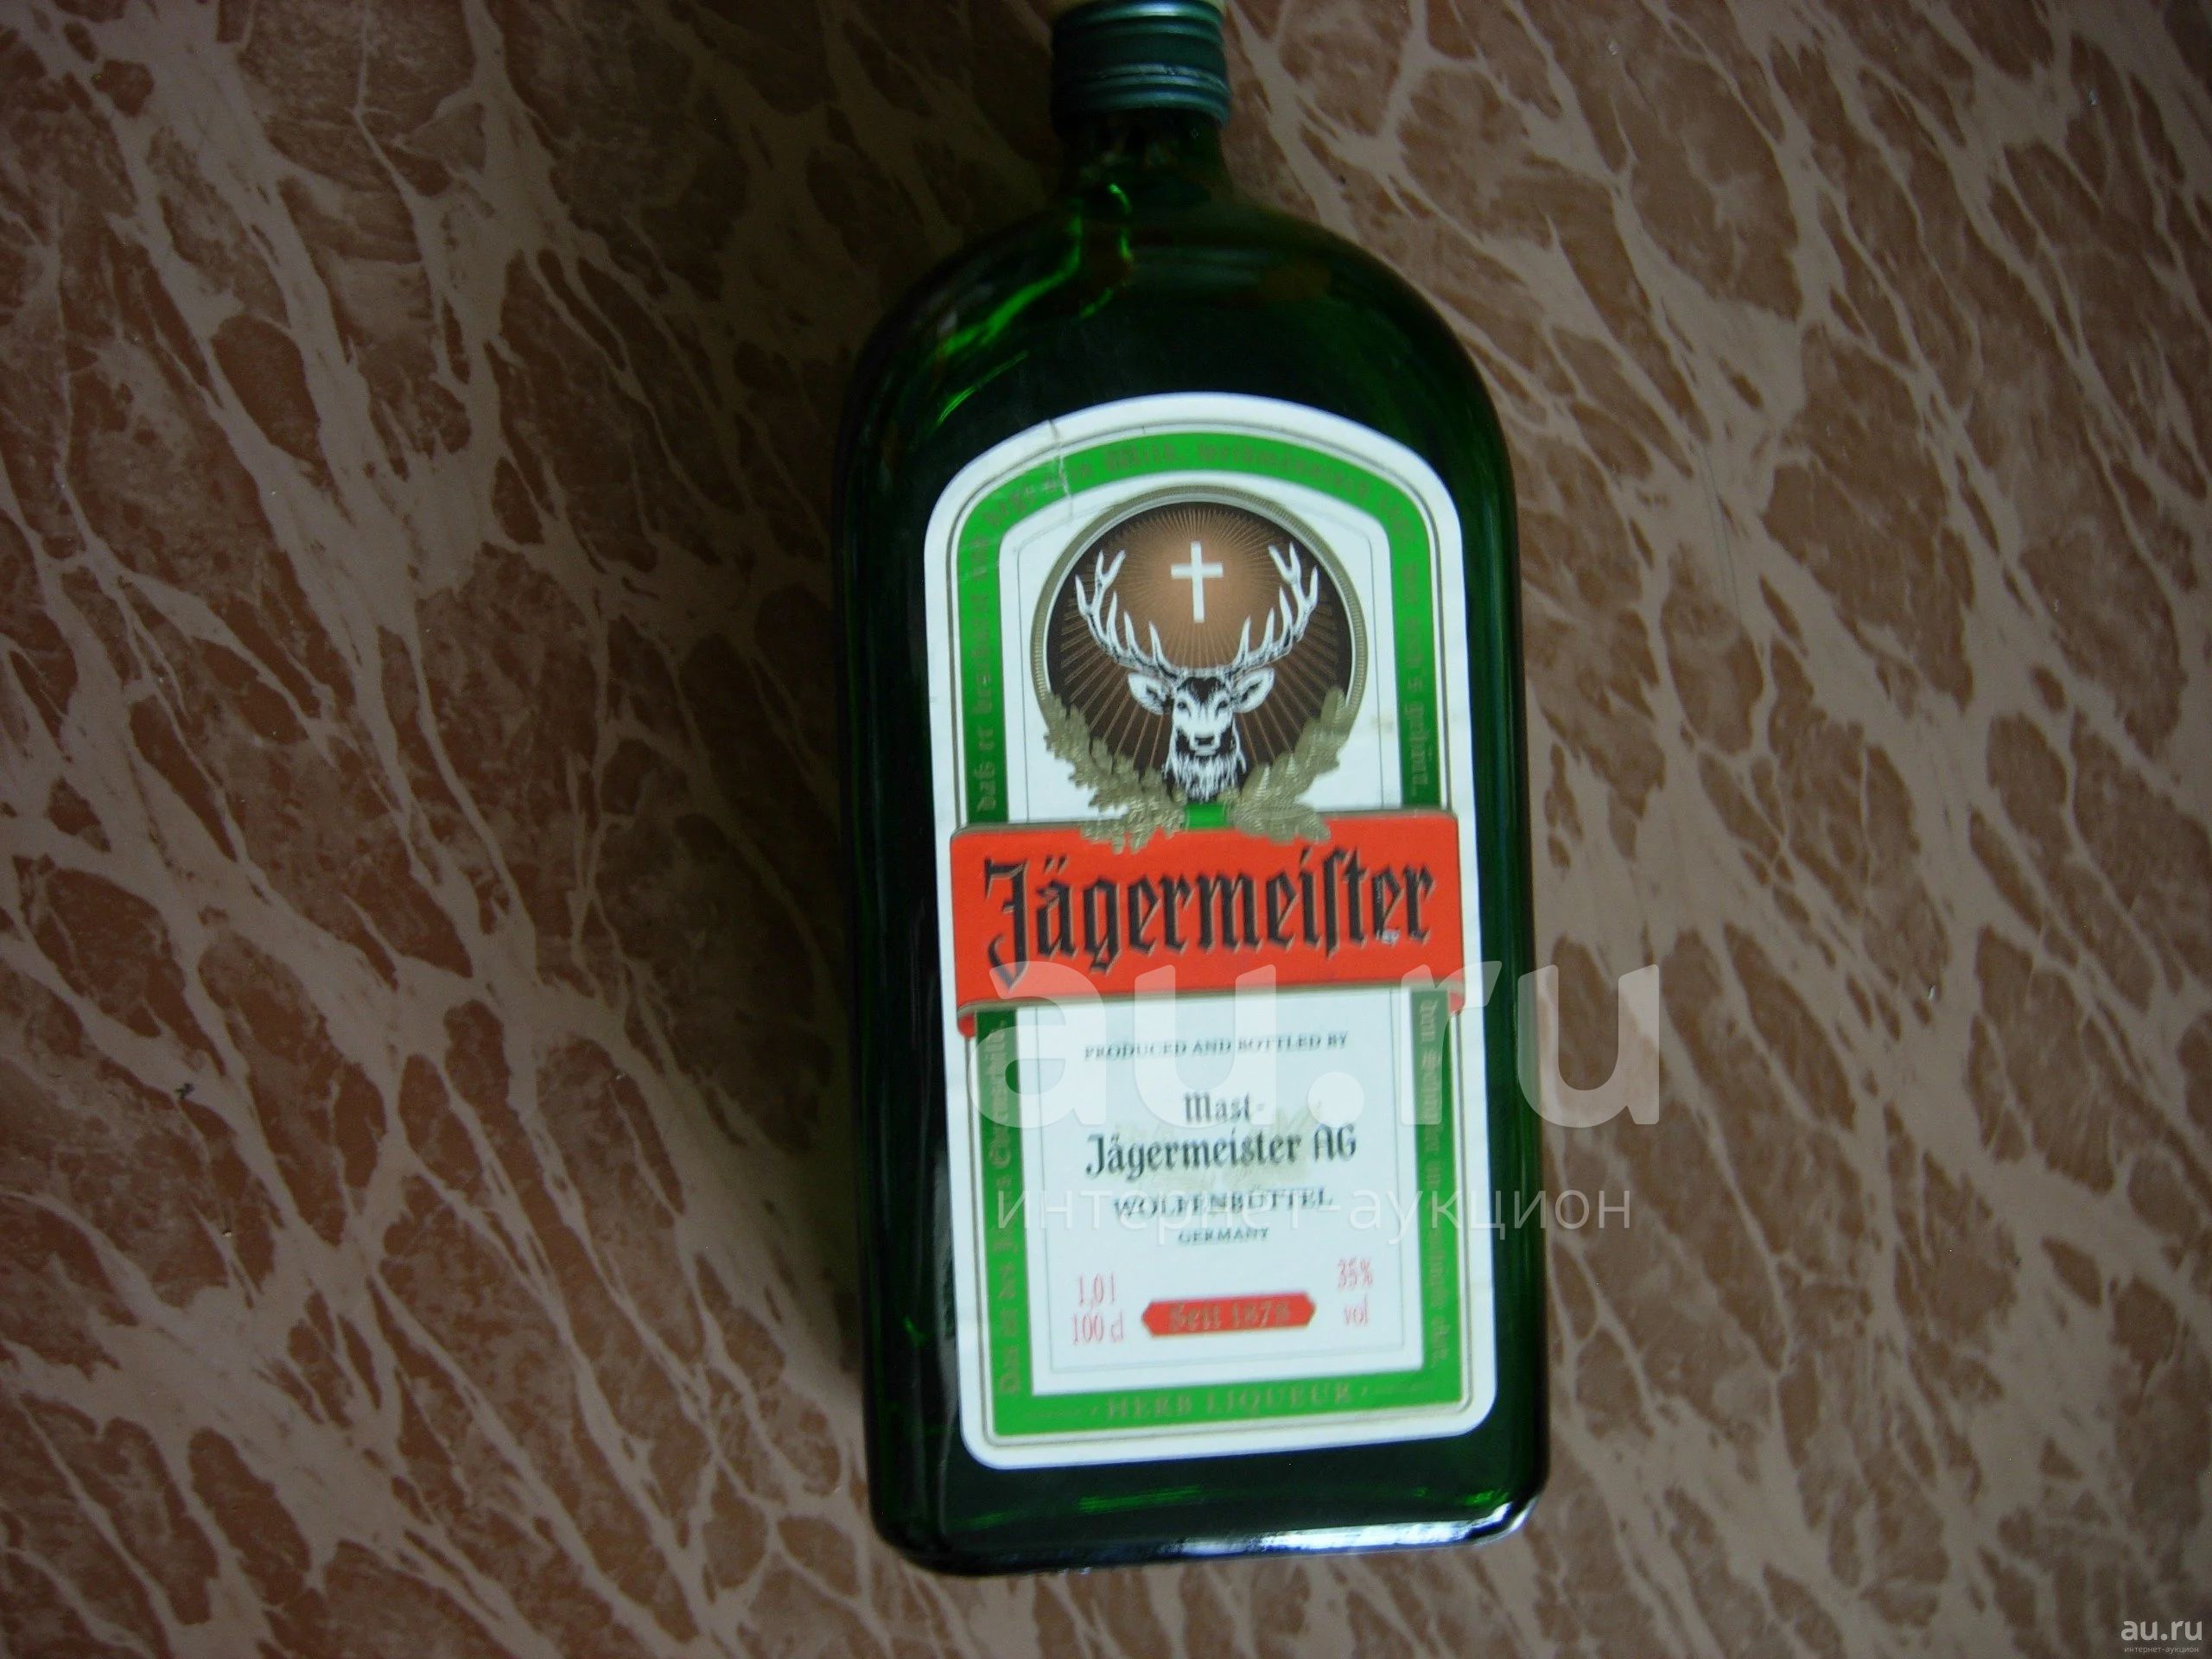 Цена ягермастера 0.7. Немецкий ликер с зеленой этикеткой. Бутылка пробка этикетка флагмана. Немецкие ликеры 90-х. Немецкий ликер с зайцем.